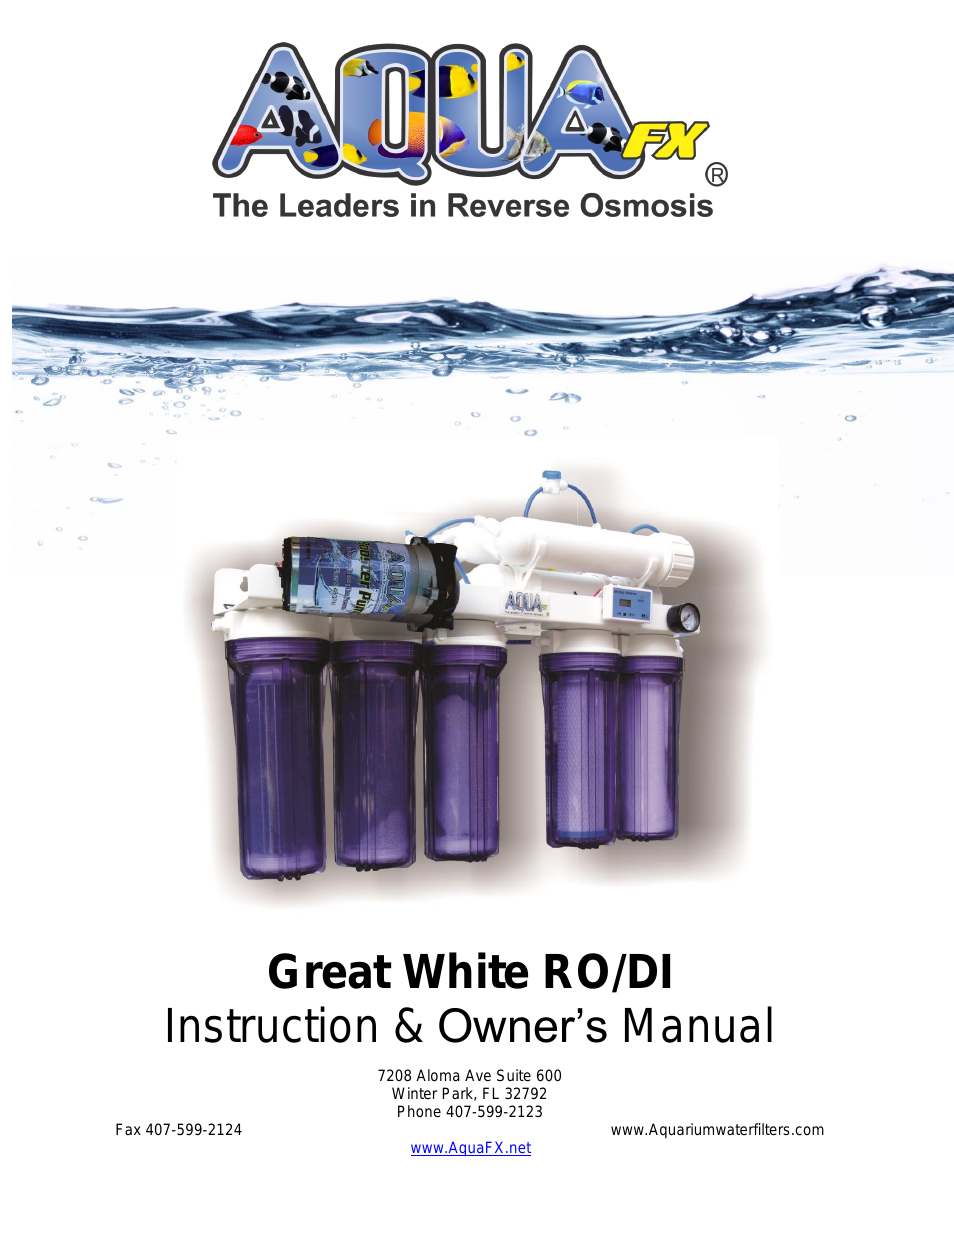 The AquaFX 300 GPD Great White RO/DI